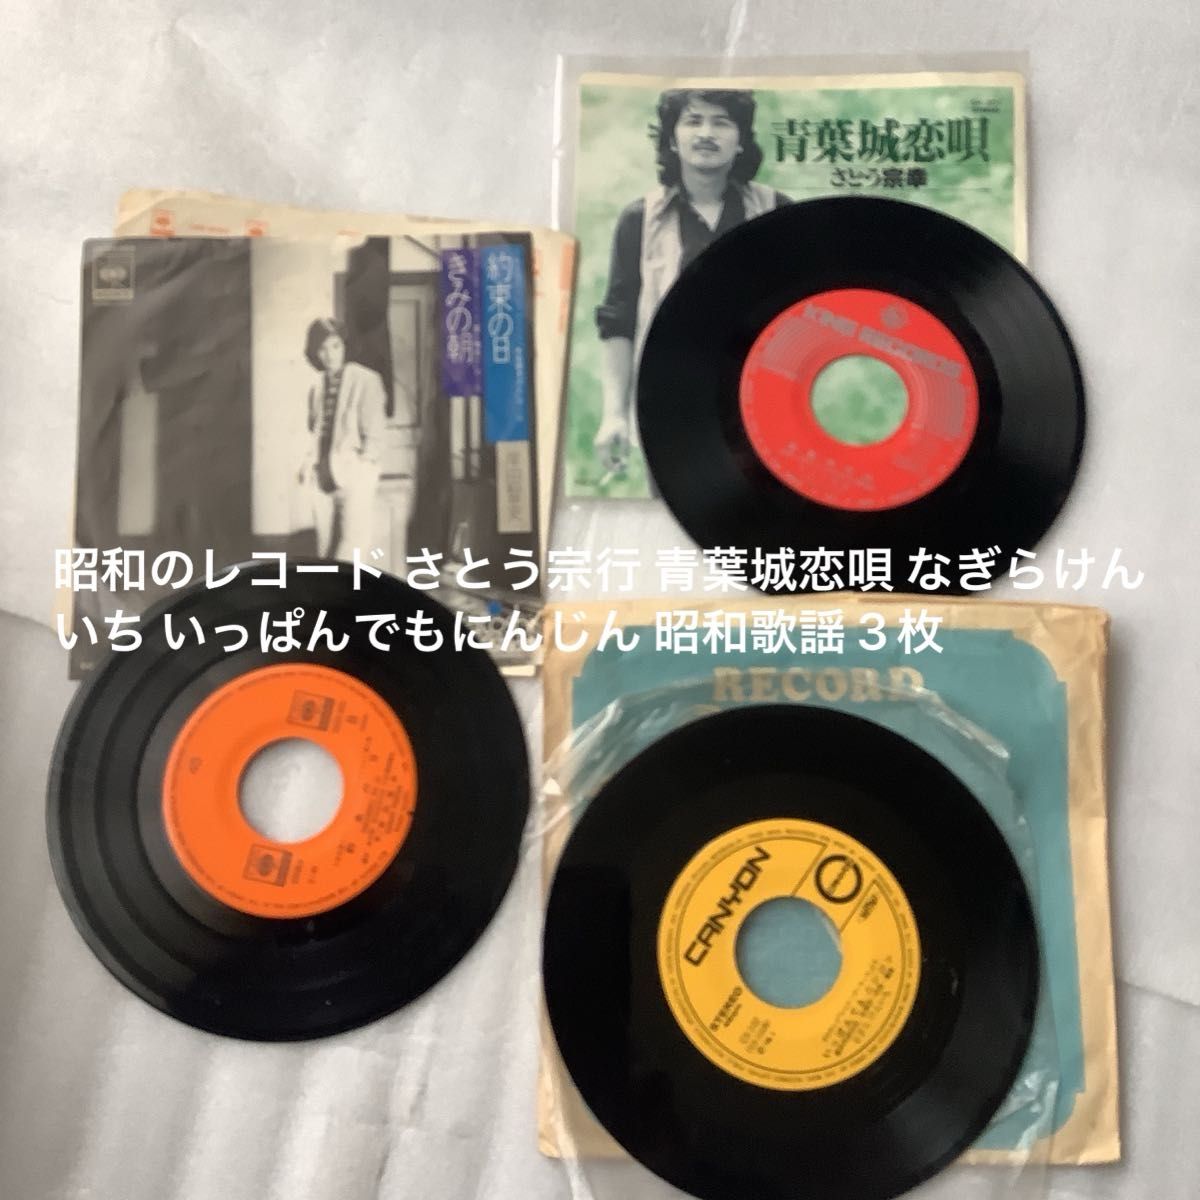 昭和のレコード さとう宗行 青葉城恋唄 なぎらけんいち いっぱんでもにんじん 昭和歌謡 3枚